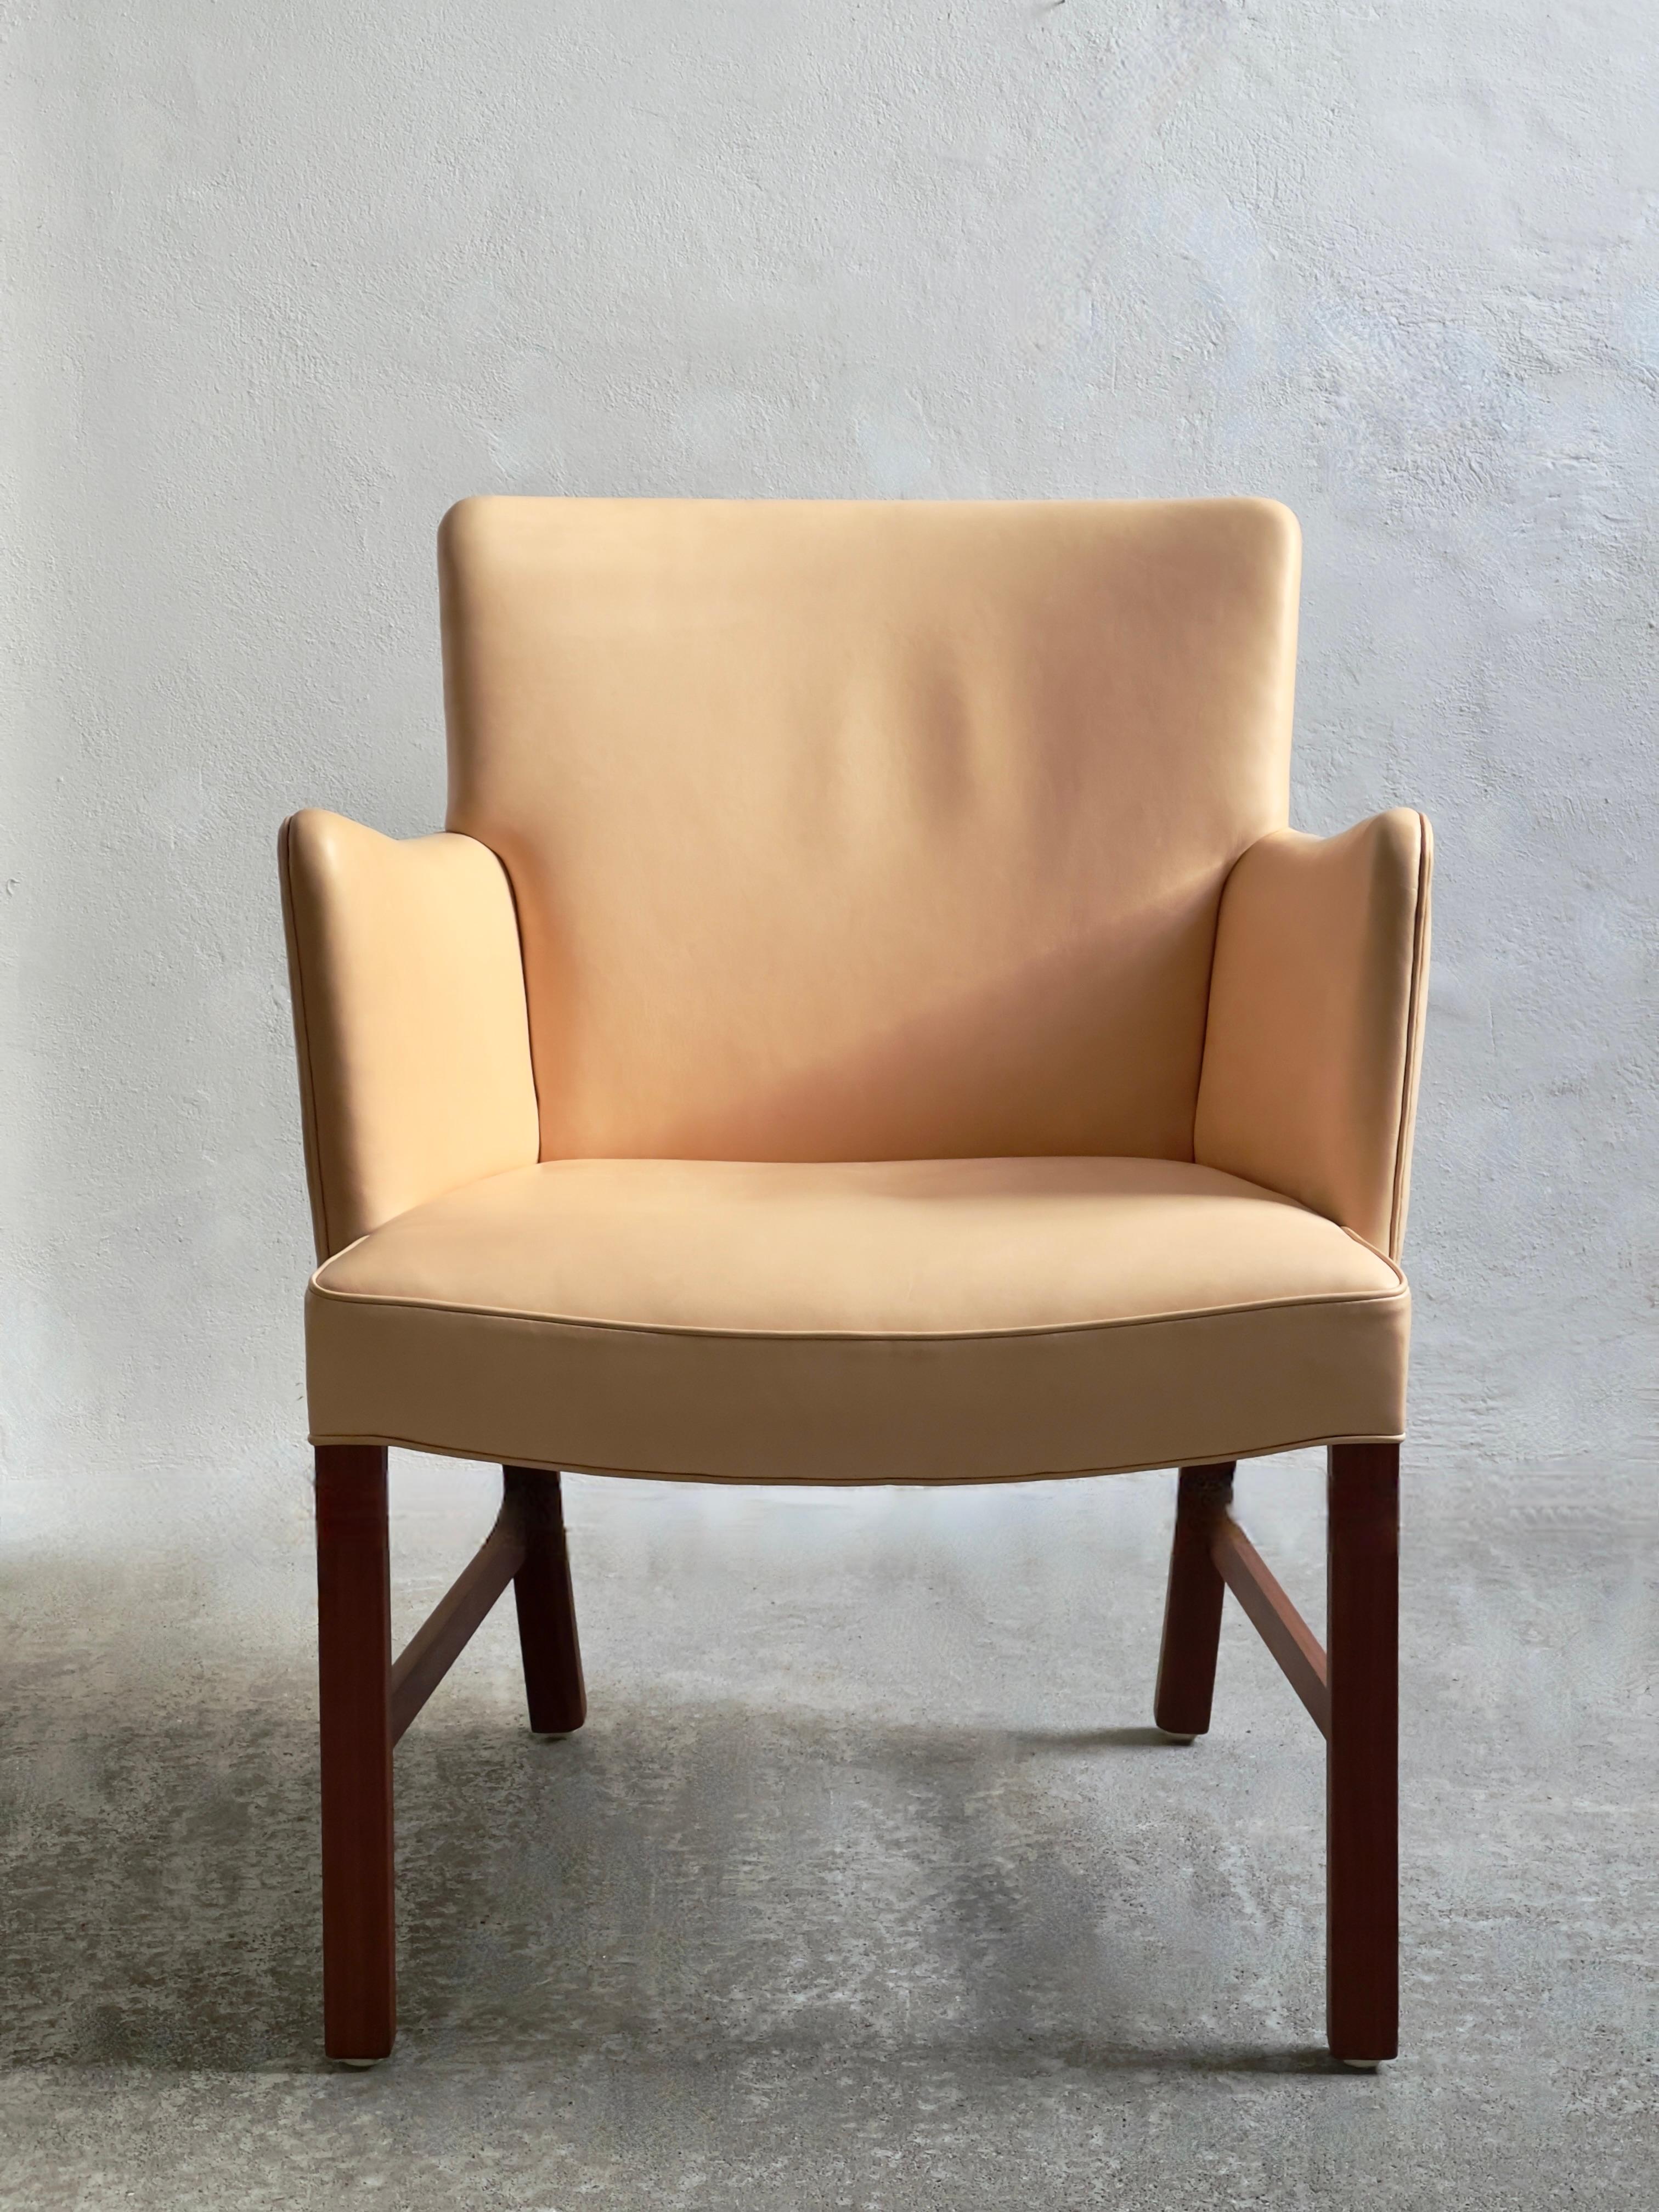 Ce fauteuil moderne danois de Jacob Rever, maître ébéniste vénéré et pionnier du modernisme, incarne l'essence de la sophistication du design du milieu du siècle. Fabriqué en 1960 à Copenhague, il témoigne de la vision novatrice et du savoir-faire